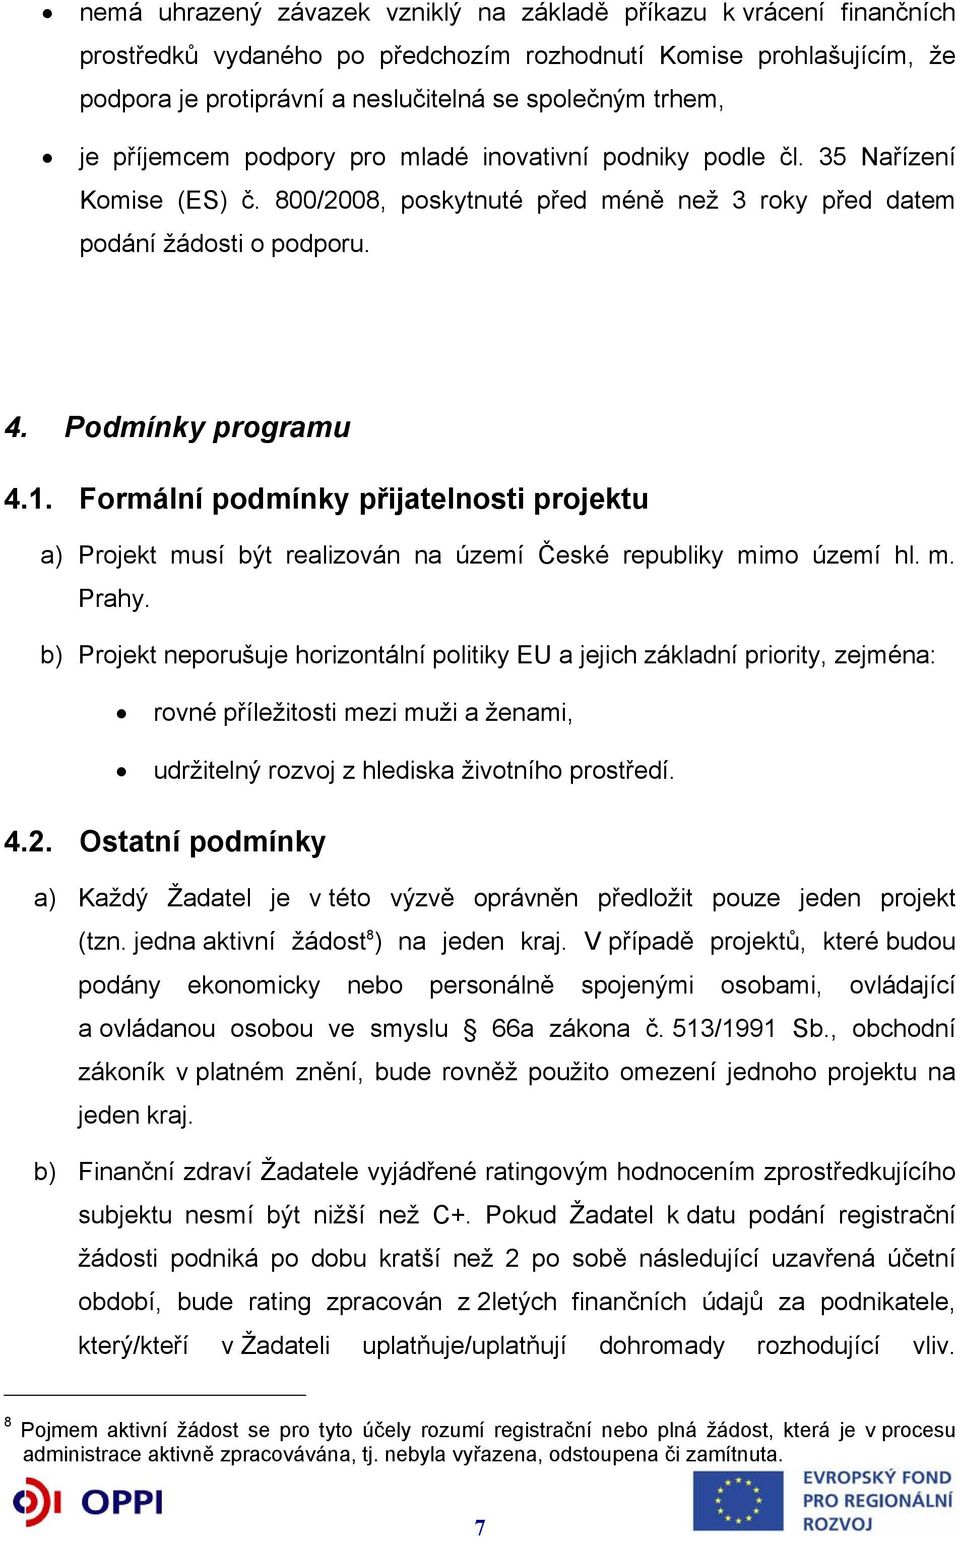 Formální podmínky přijatelnosti projektu a) Projekt musí být realizován na území České republiky mimo území hl. m. Prahy.